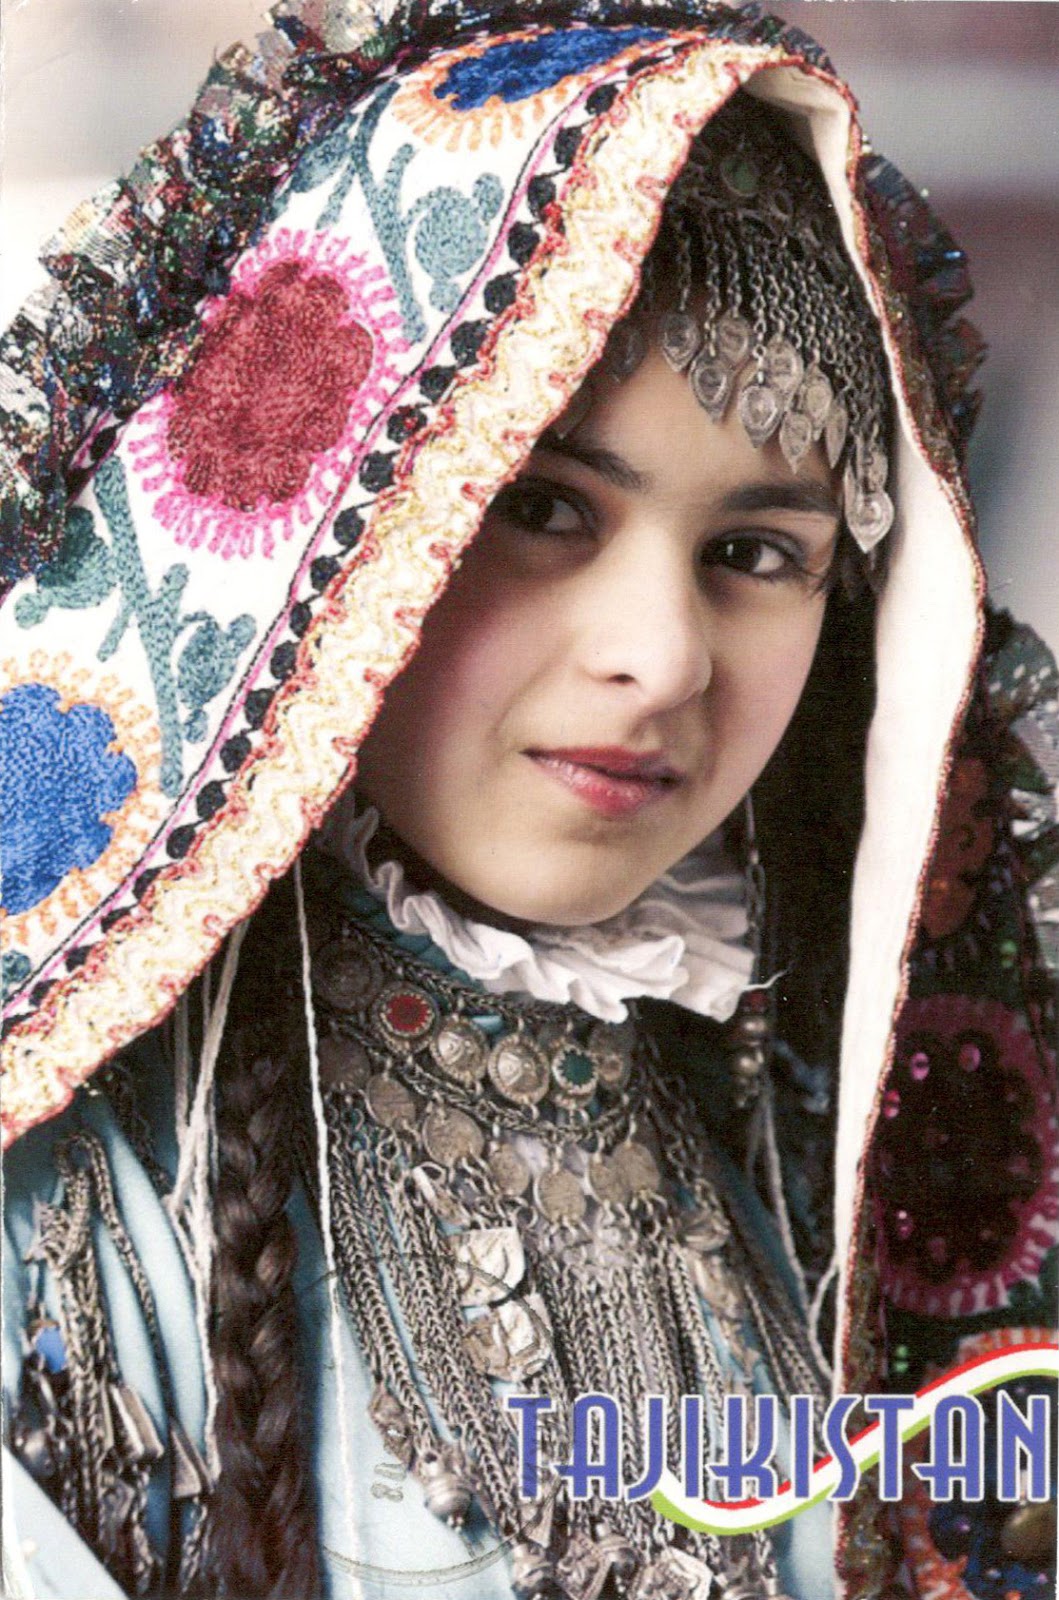 WORLD, COME TO MY HOME!: 1934 TAJIKISTAN - A Tajik girl in traditional